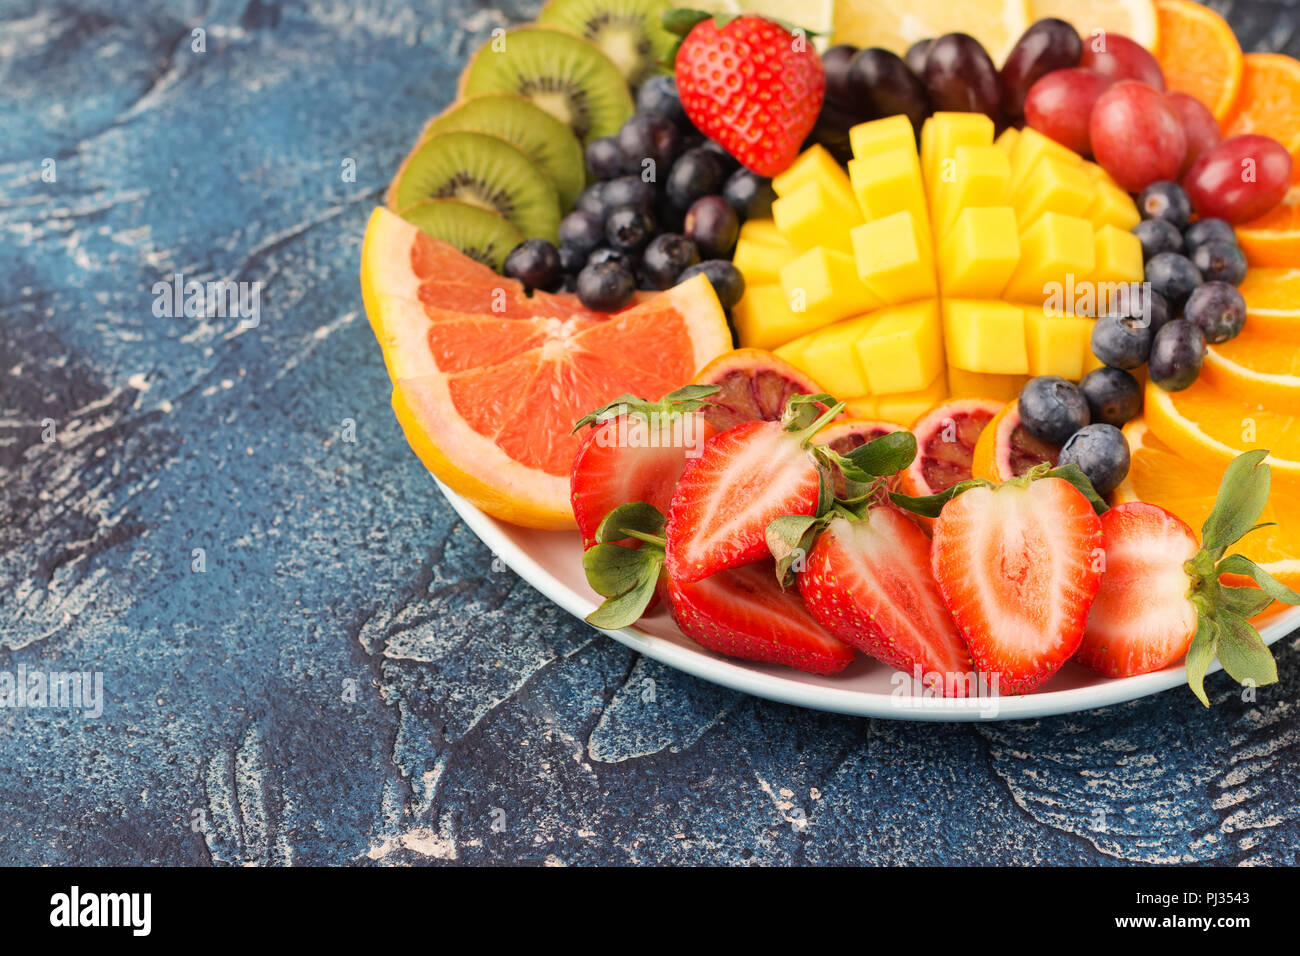 Assiette de fruits et baies sains en couleurs arc-en-ciel close up, fraises, mangue, Raisin, Oranges, kiwis, citrons sur le tableau bleu, copie de l'espace pour texte, selective focus Banque D'Images